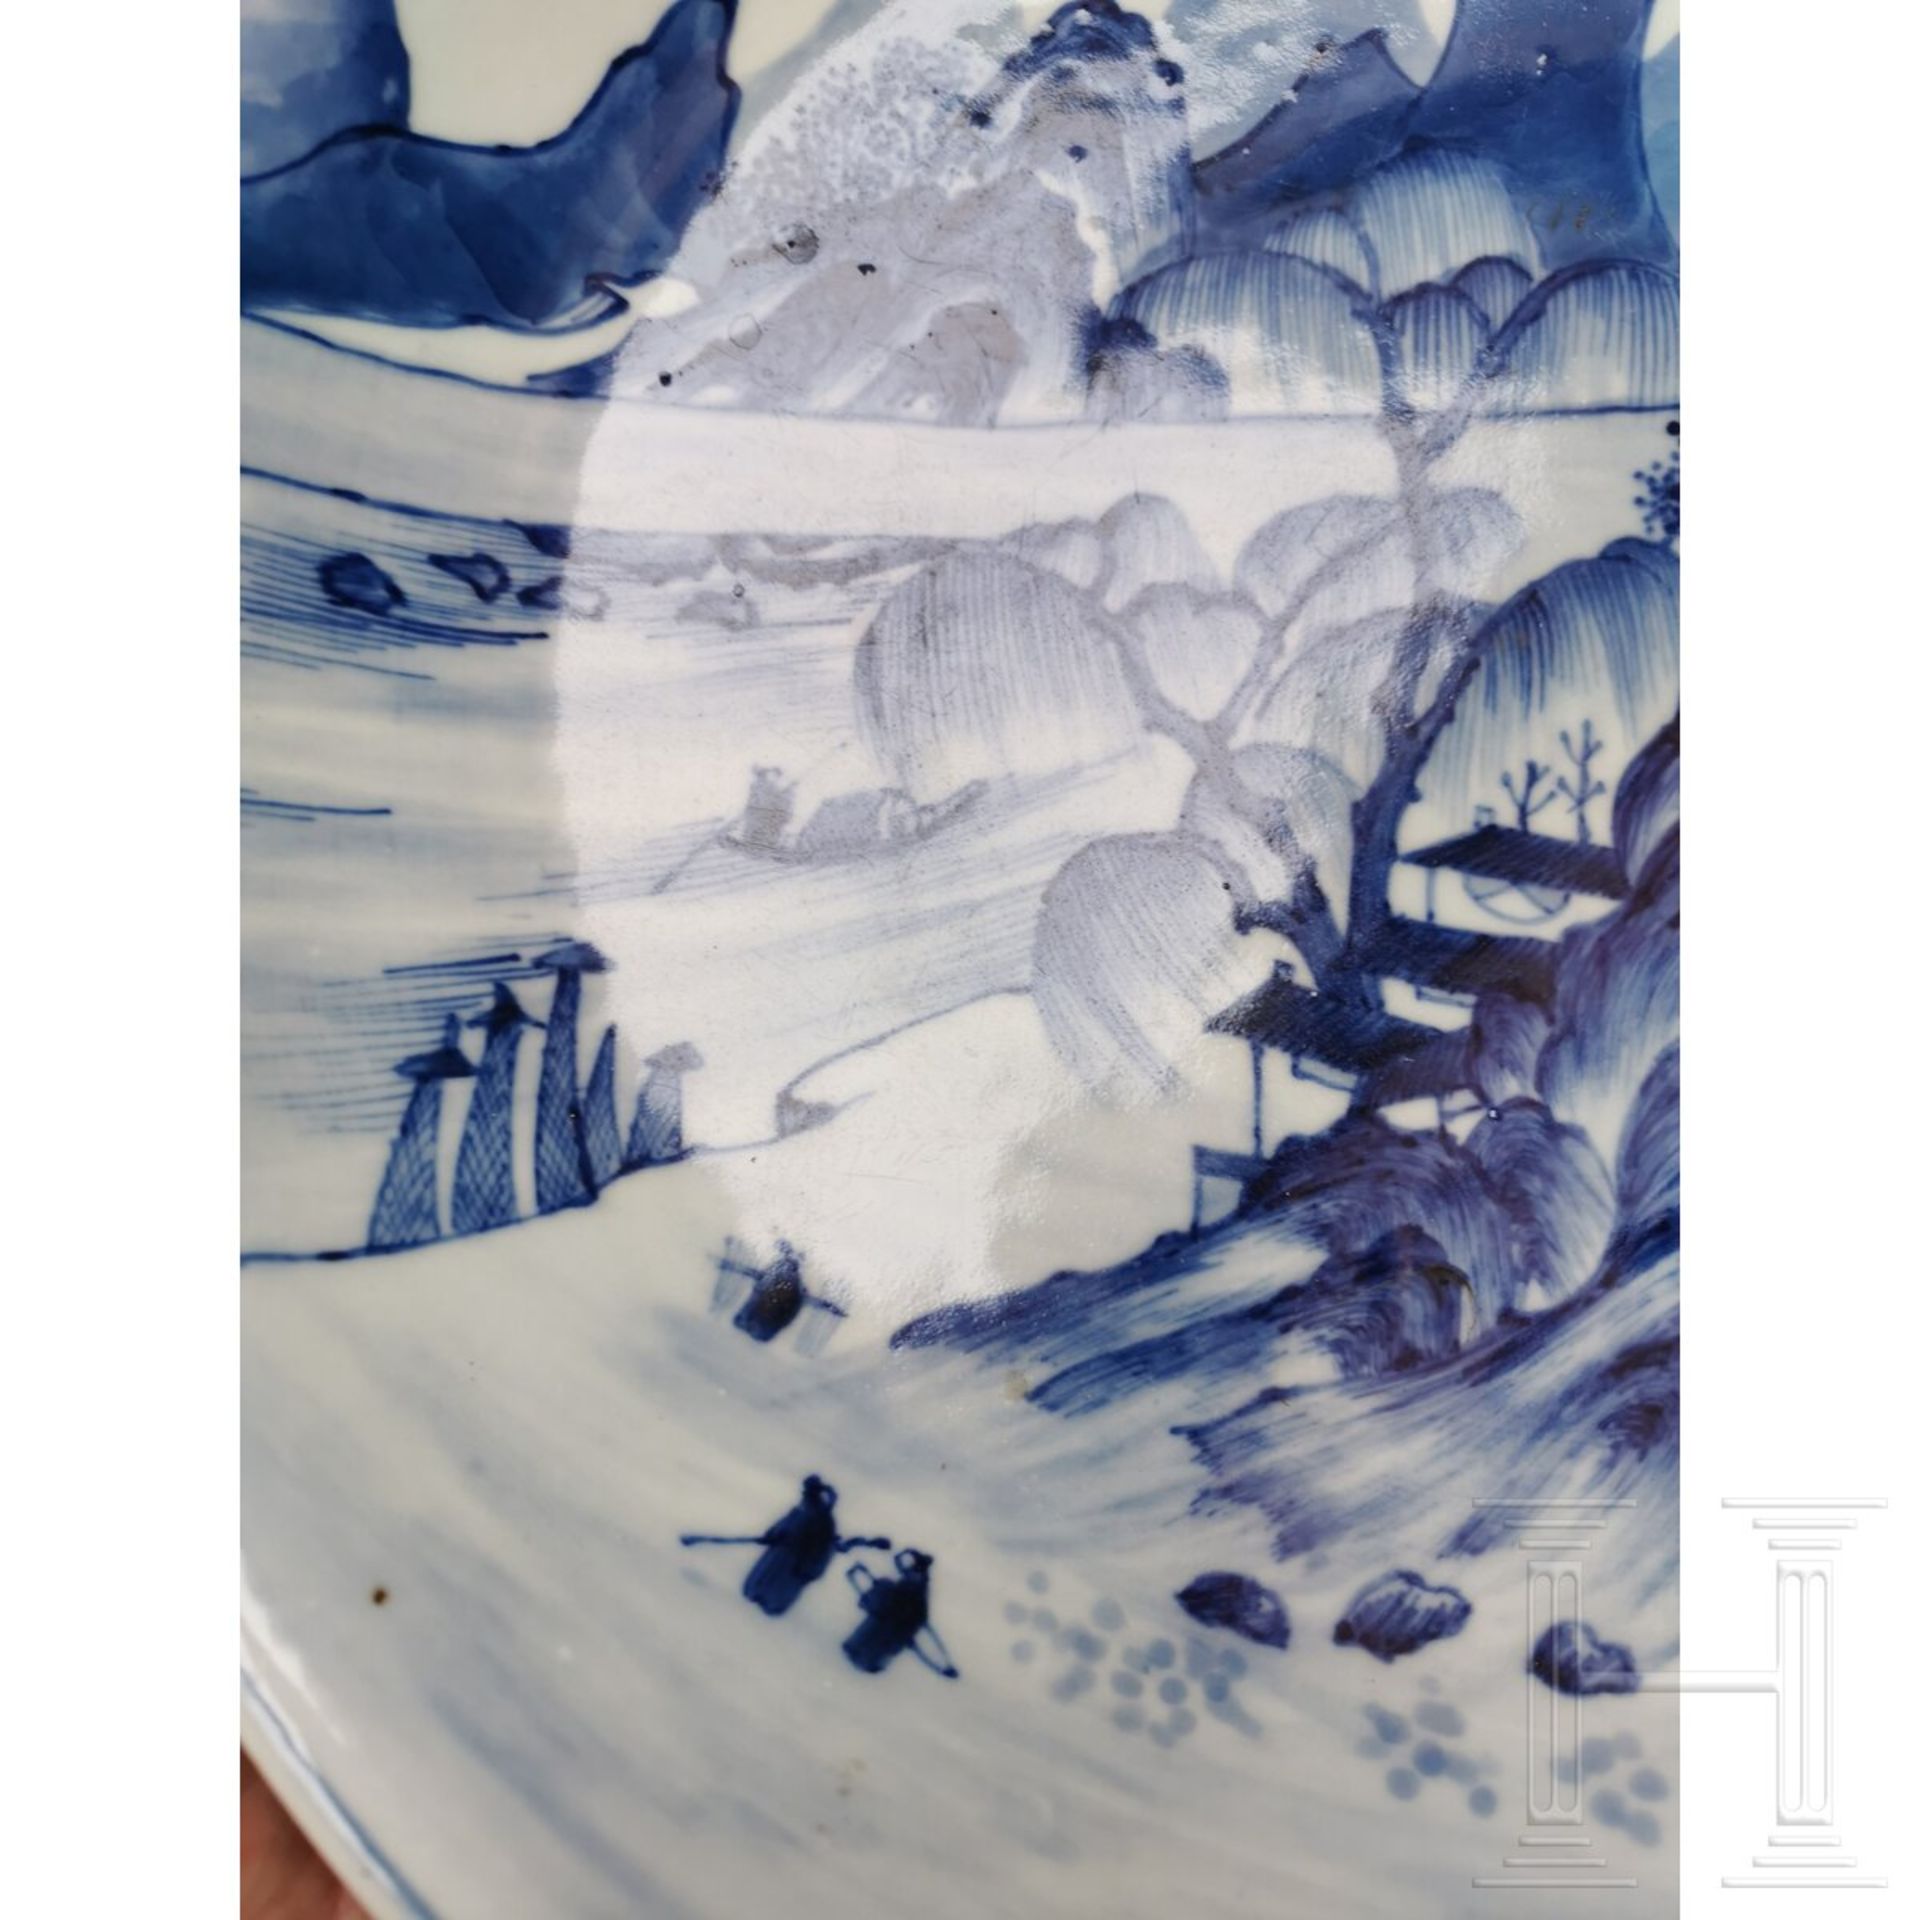 Große blaue-weiße Schale mit Seen- und Berglandschaft, China, wohl 19./20. Jhdt. - Bild 14 aus 19